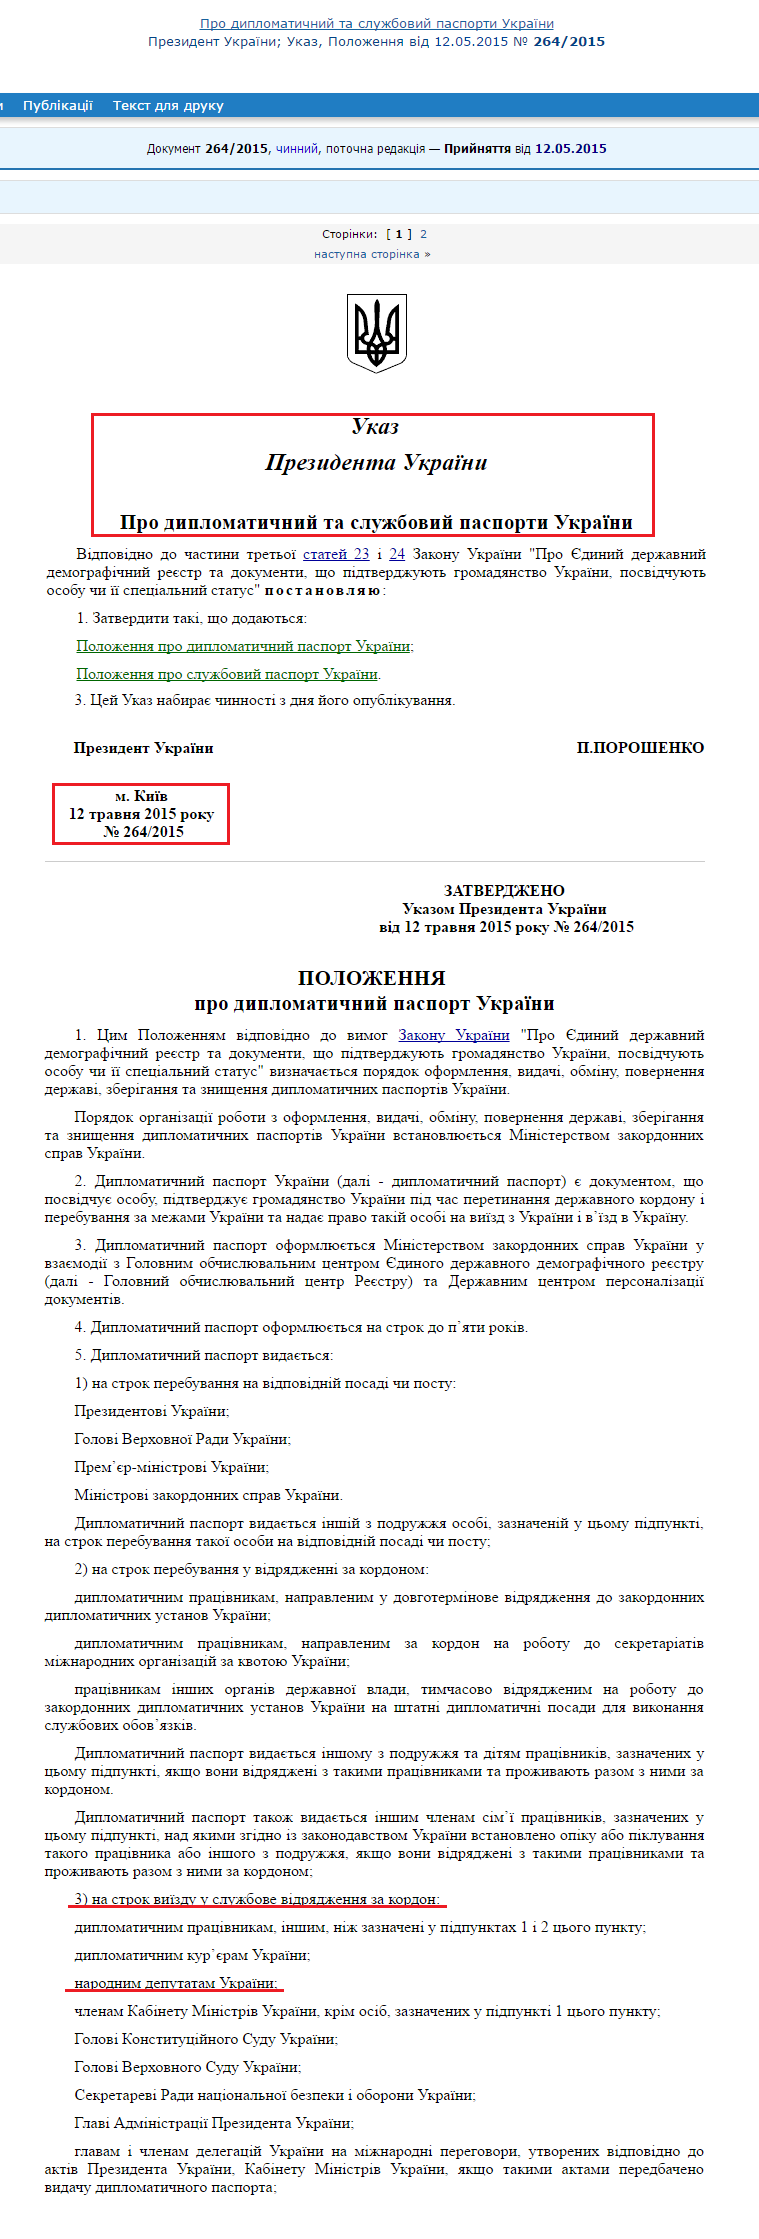 http://zakon5.rada.gov.ua/laws/show/264/2015